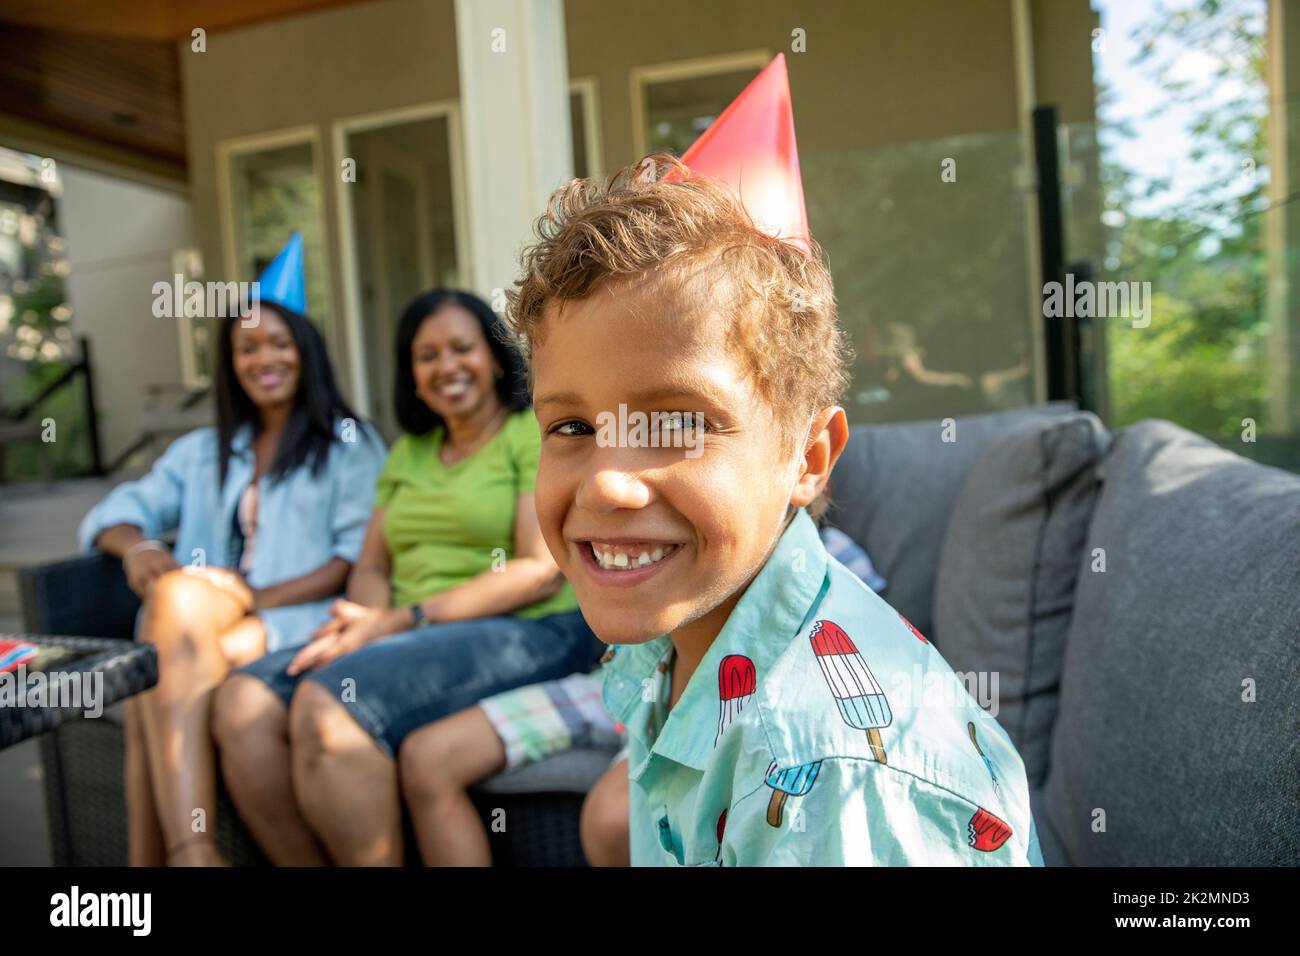 Porträt eines Jungen mit Kegelhut lächelnd auf der Geburtstagsfeier Stockfoto